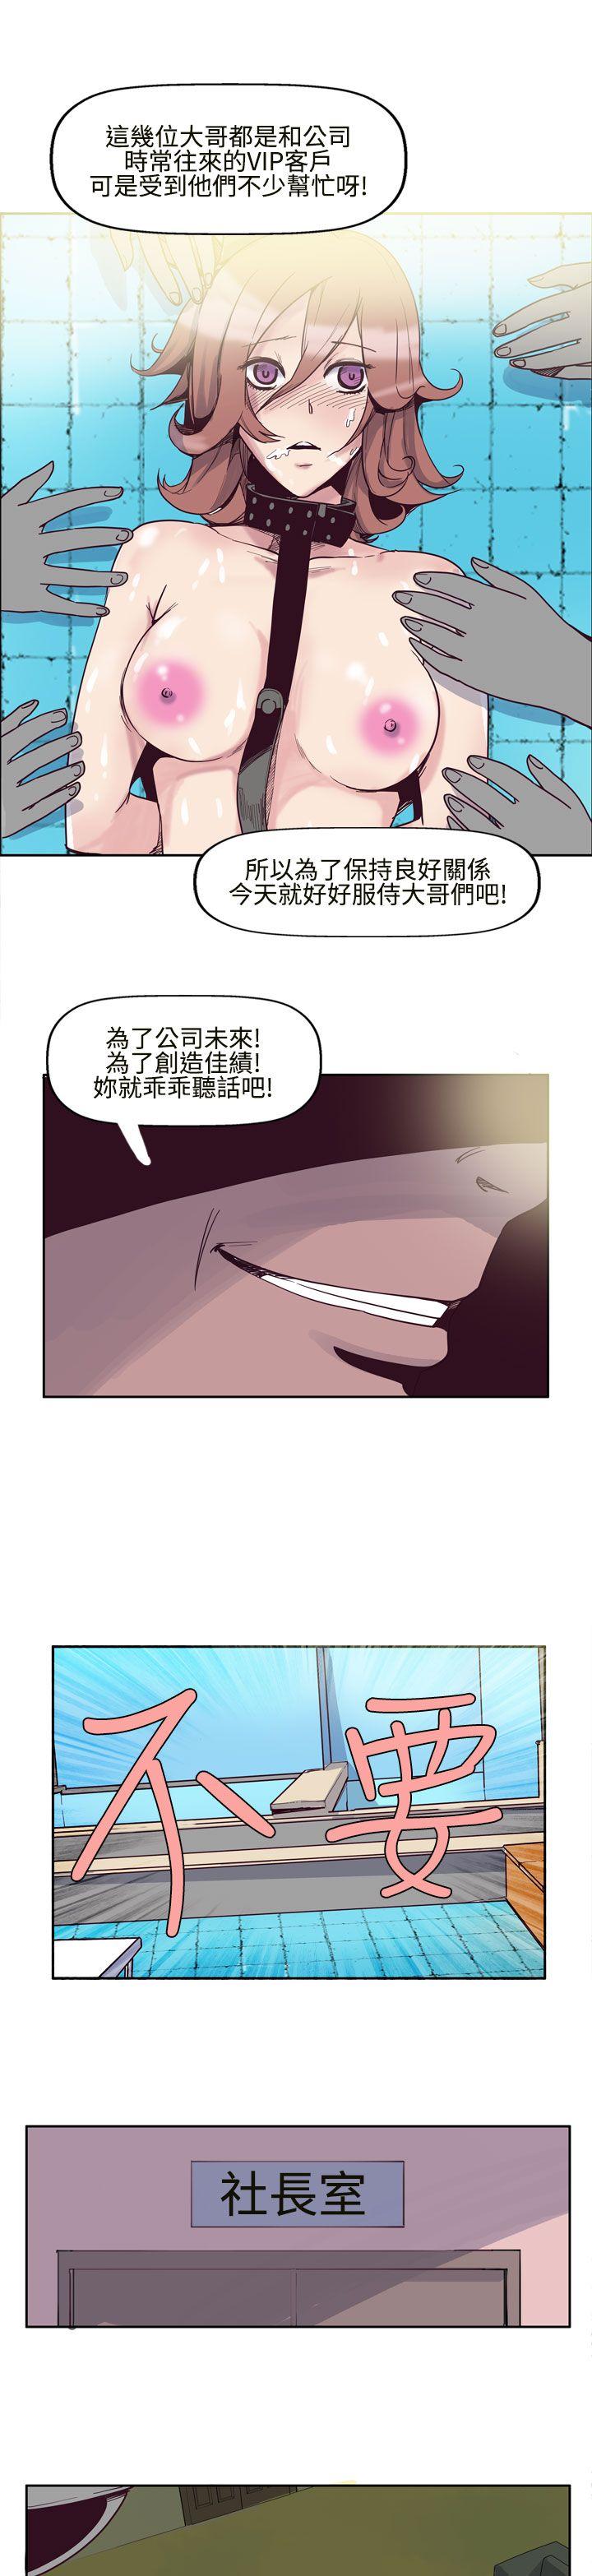 韩国污漫画 混混痞痞 派遣員 第6话 9